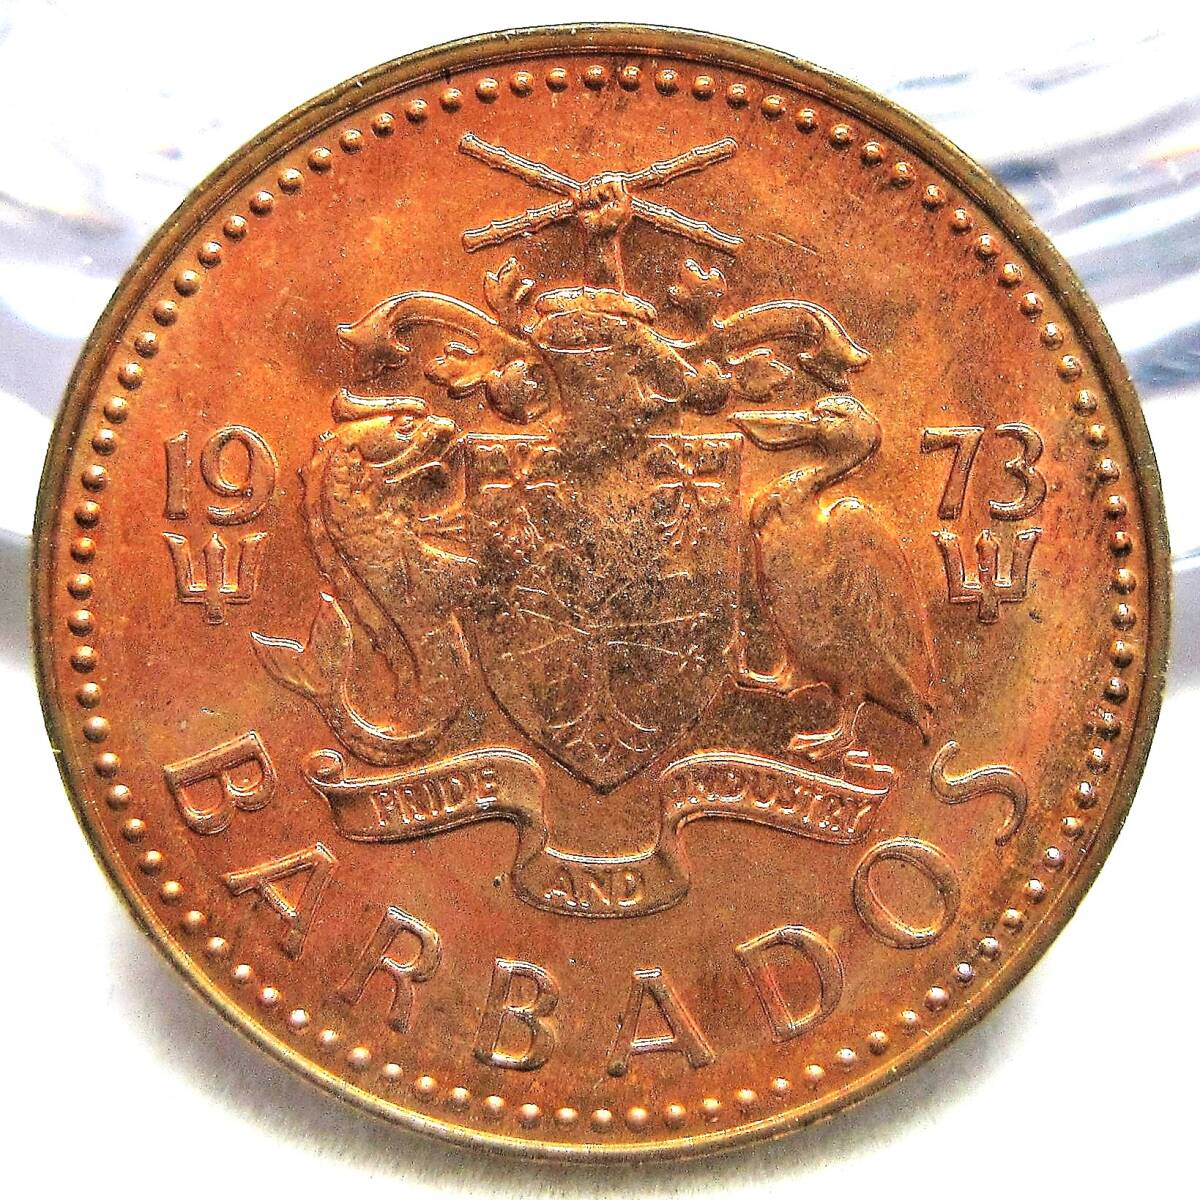 バルバドス 1セント 1973年 18.96mm 3.14g_画像2